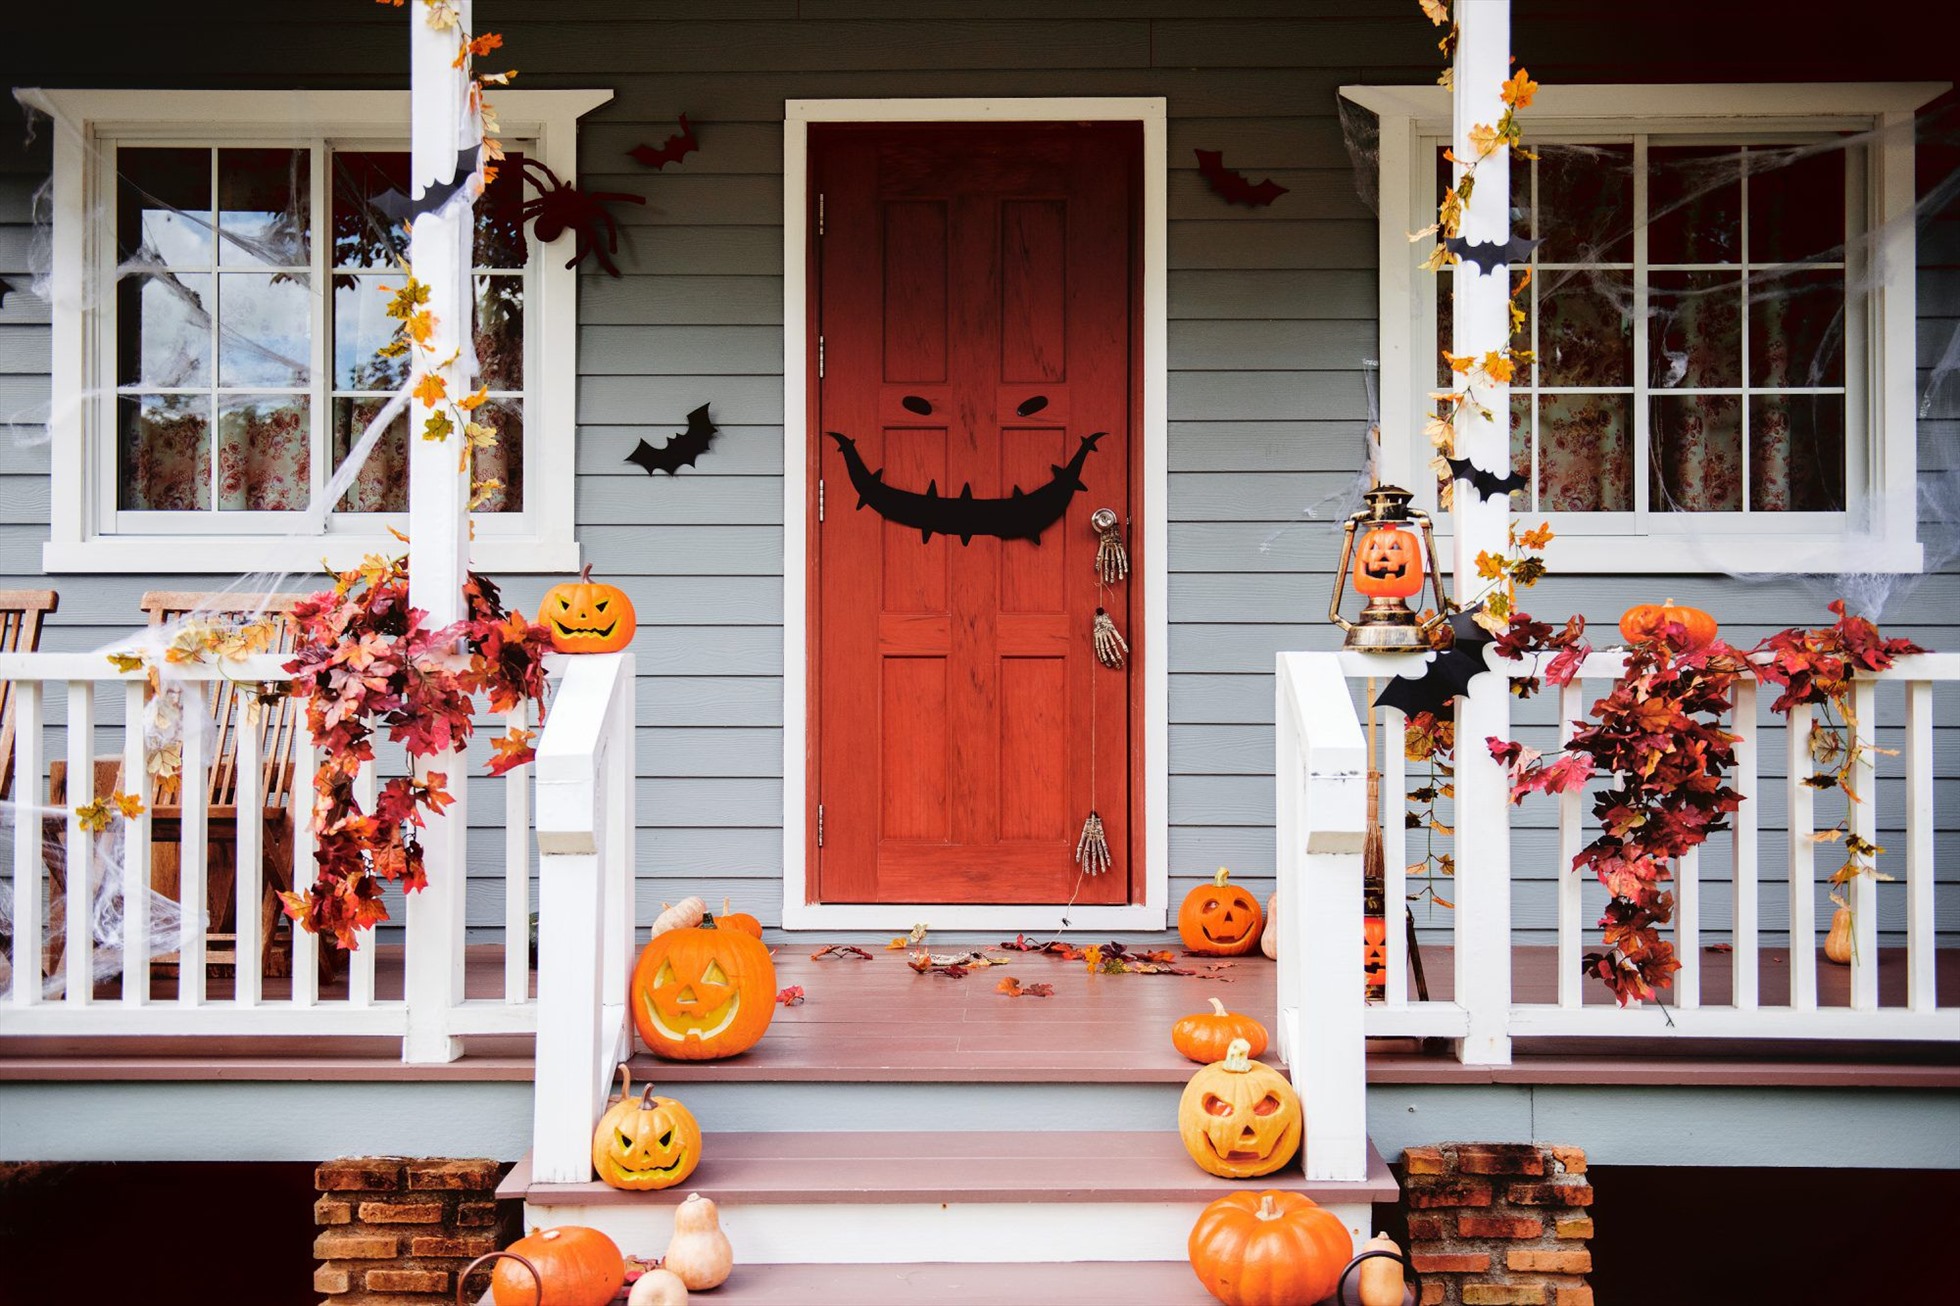 Trang trí nhà cửa theo đúng chủ đề mùa lễ hội Halloween. Ảnh: Xinhua